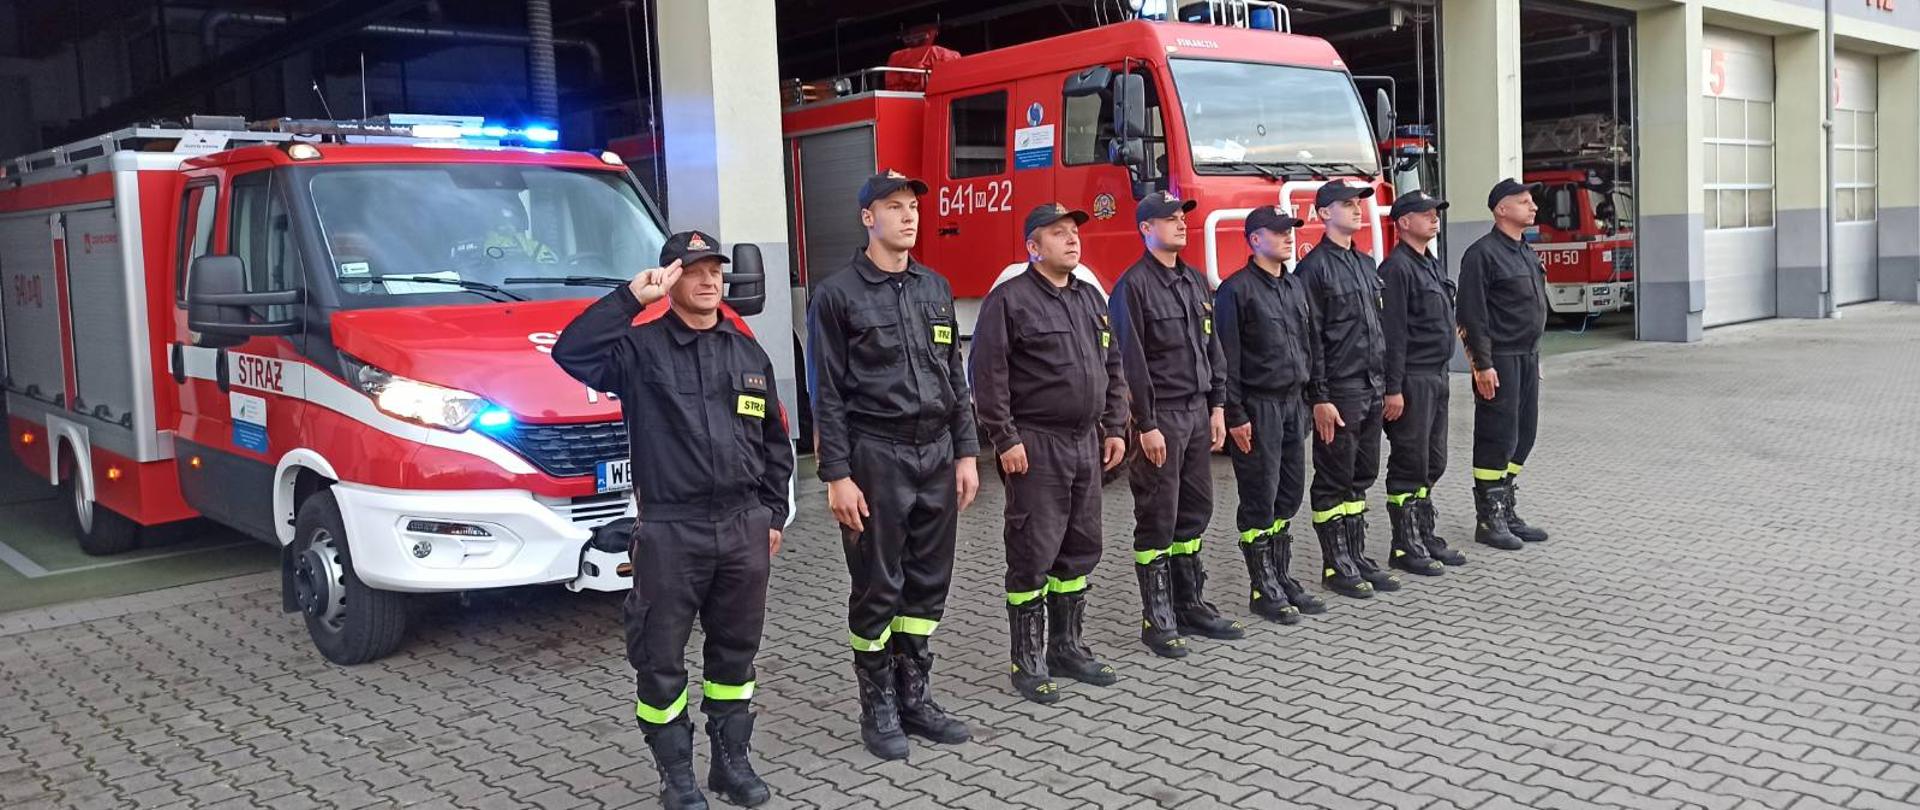 Funkcjonariusze KP PSP w Sokołowie Podlaskim oddali hołd strażakowi, który zmarł na służbie - strażacy stoją na zbiórce przed garażem JRG i samochodami i oddają honory zmarłemu strażakowi.